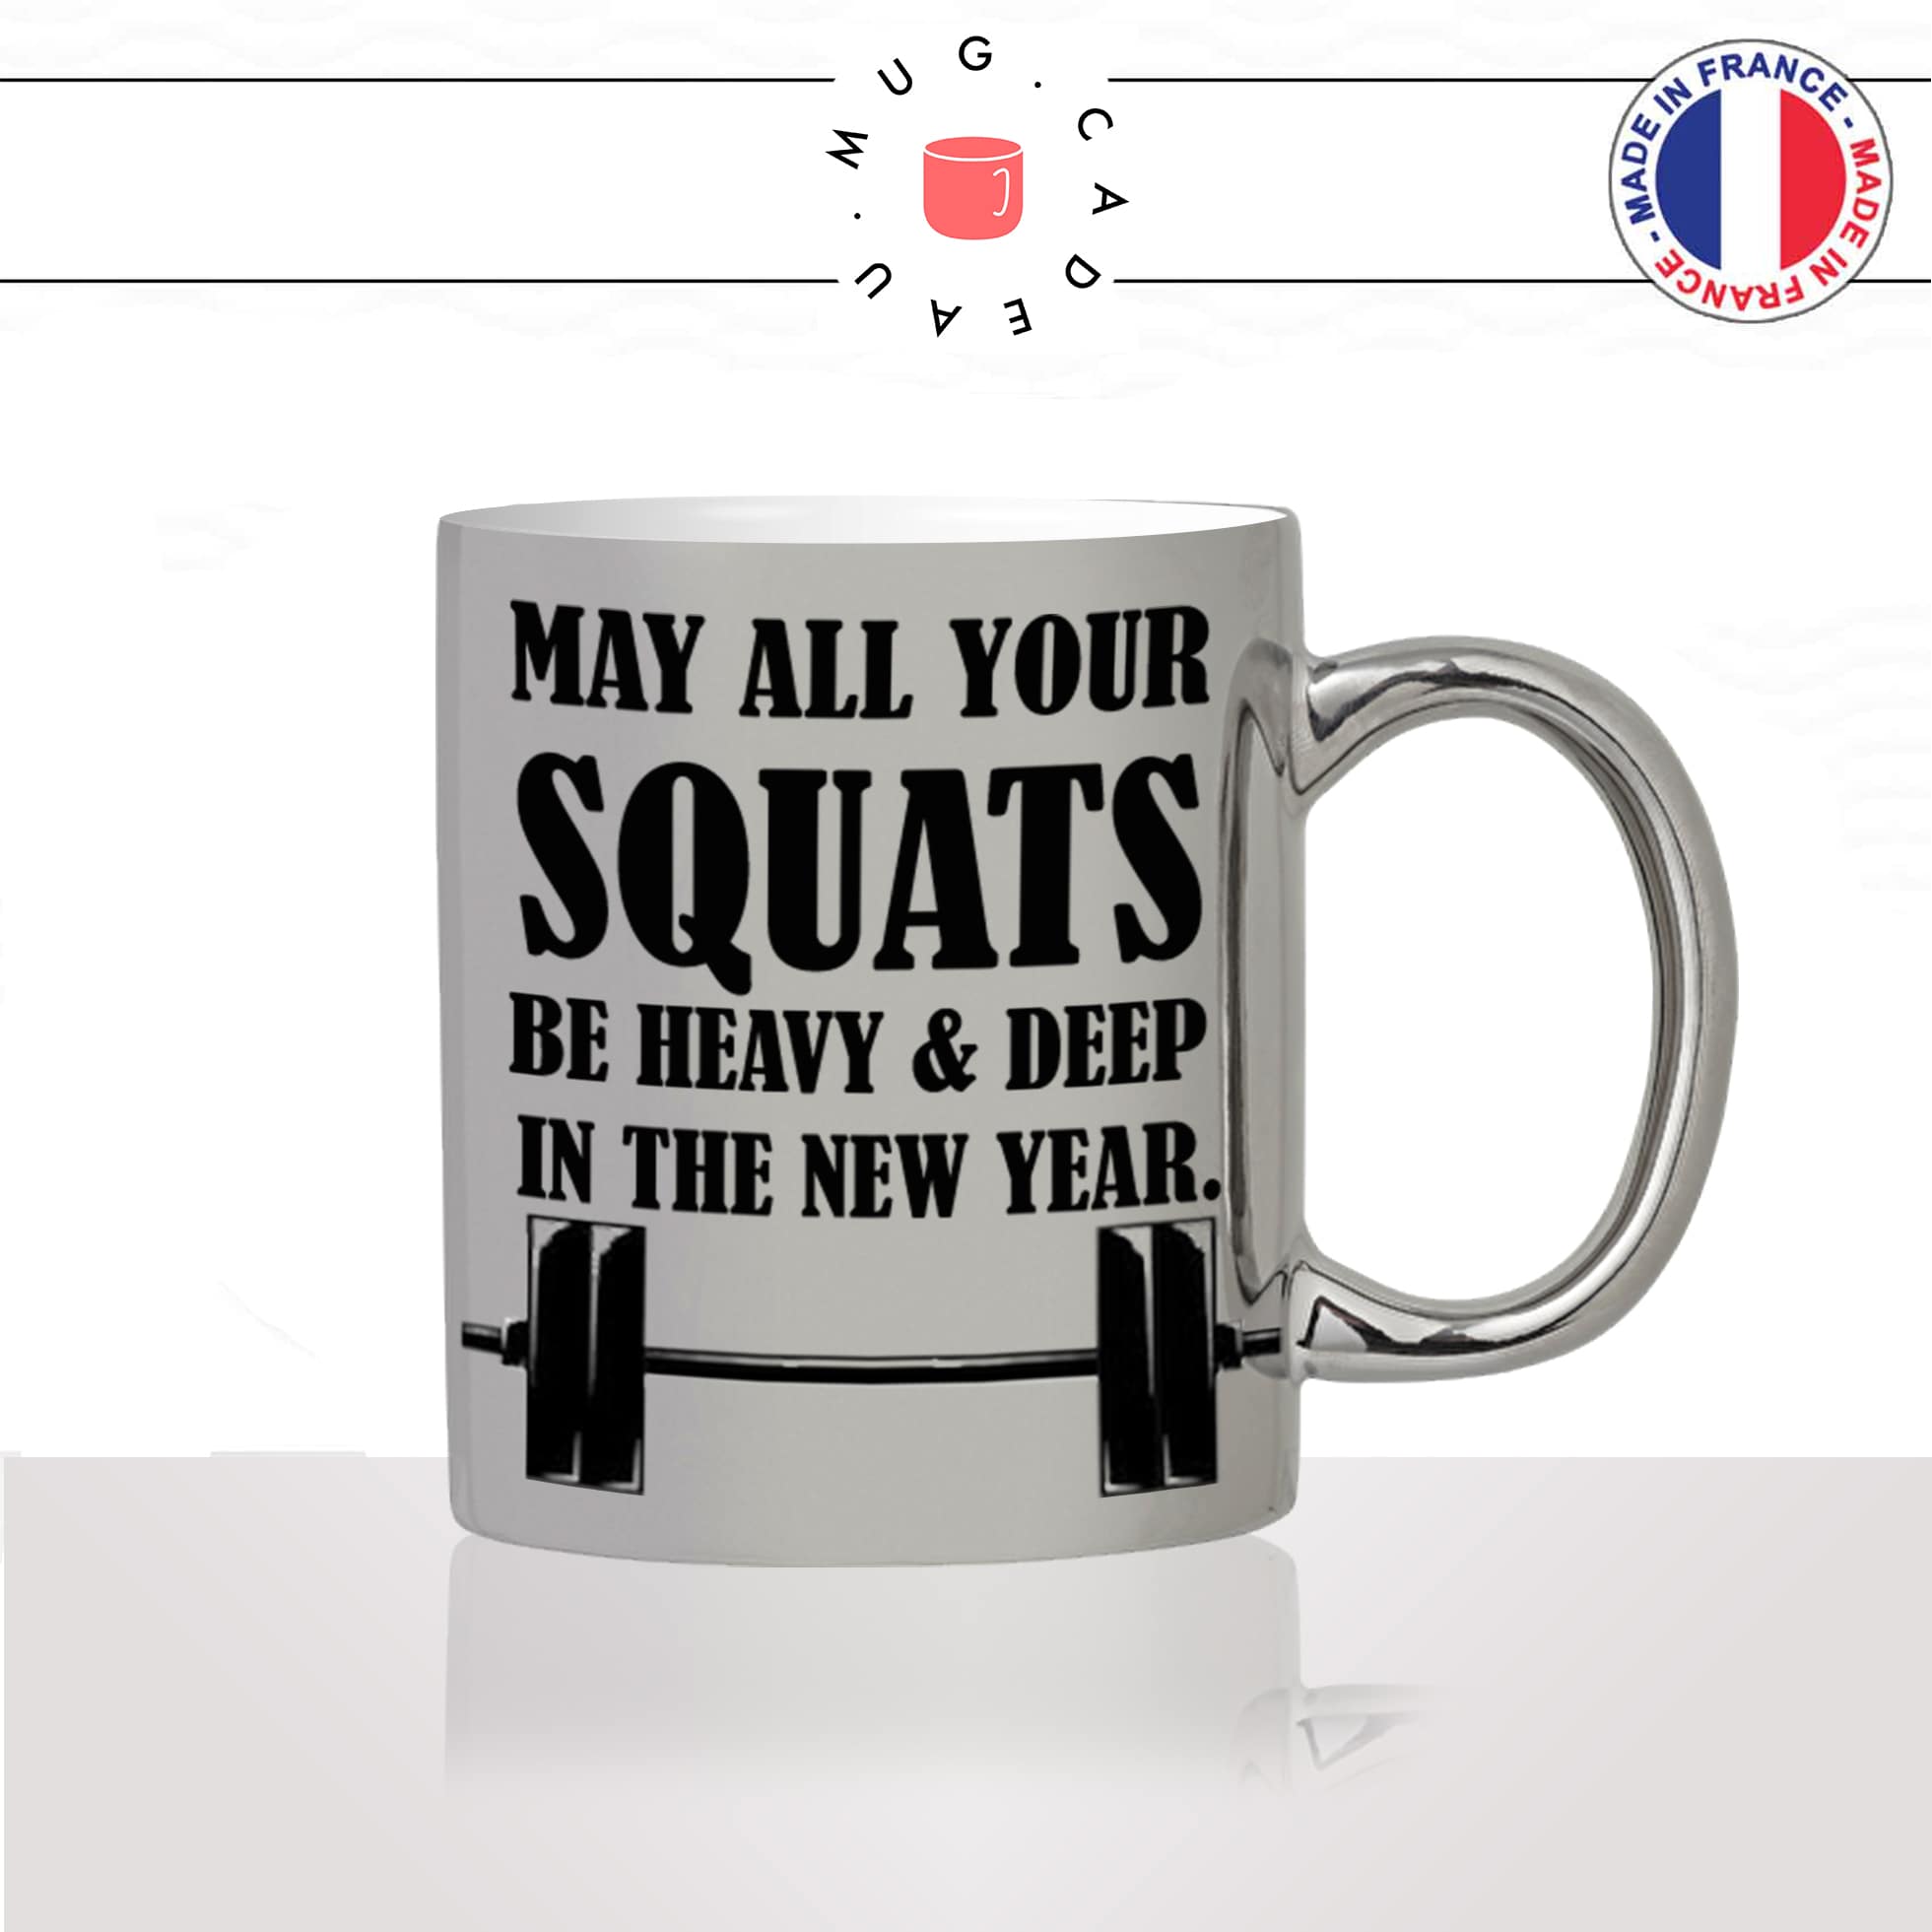 mug-tasse-argent-argenté-silver-heavy-squats-fitness-musculation-sport-collegue-motivation-humour-idée-cadeau-fun-cool-café-thé-original2-min